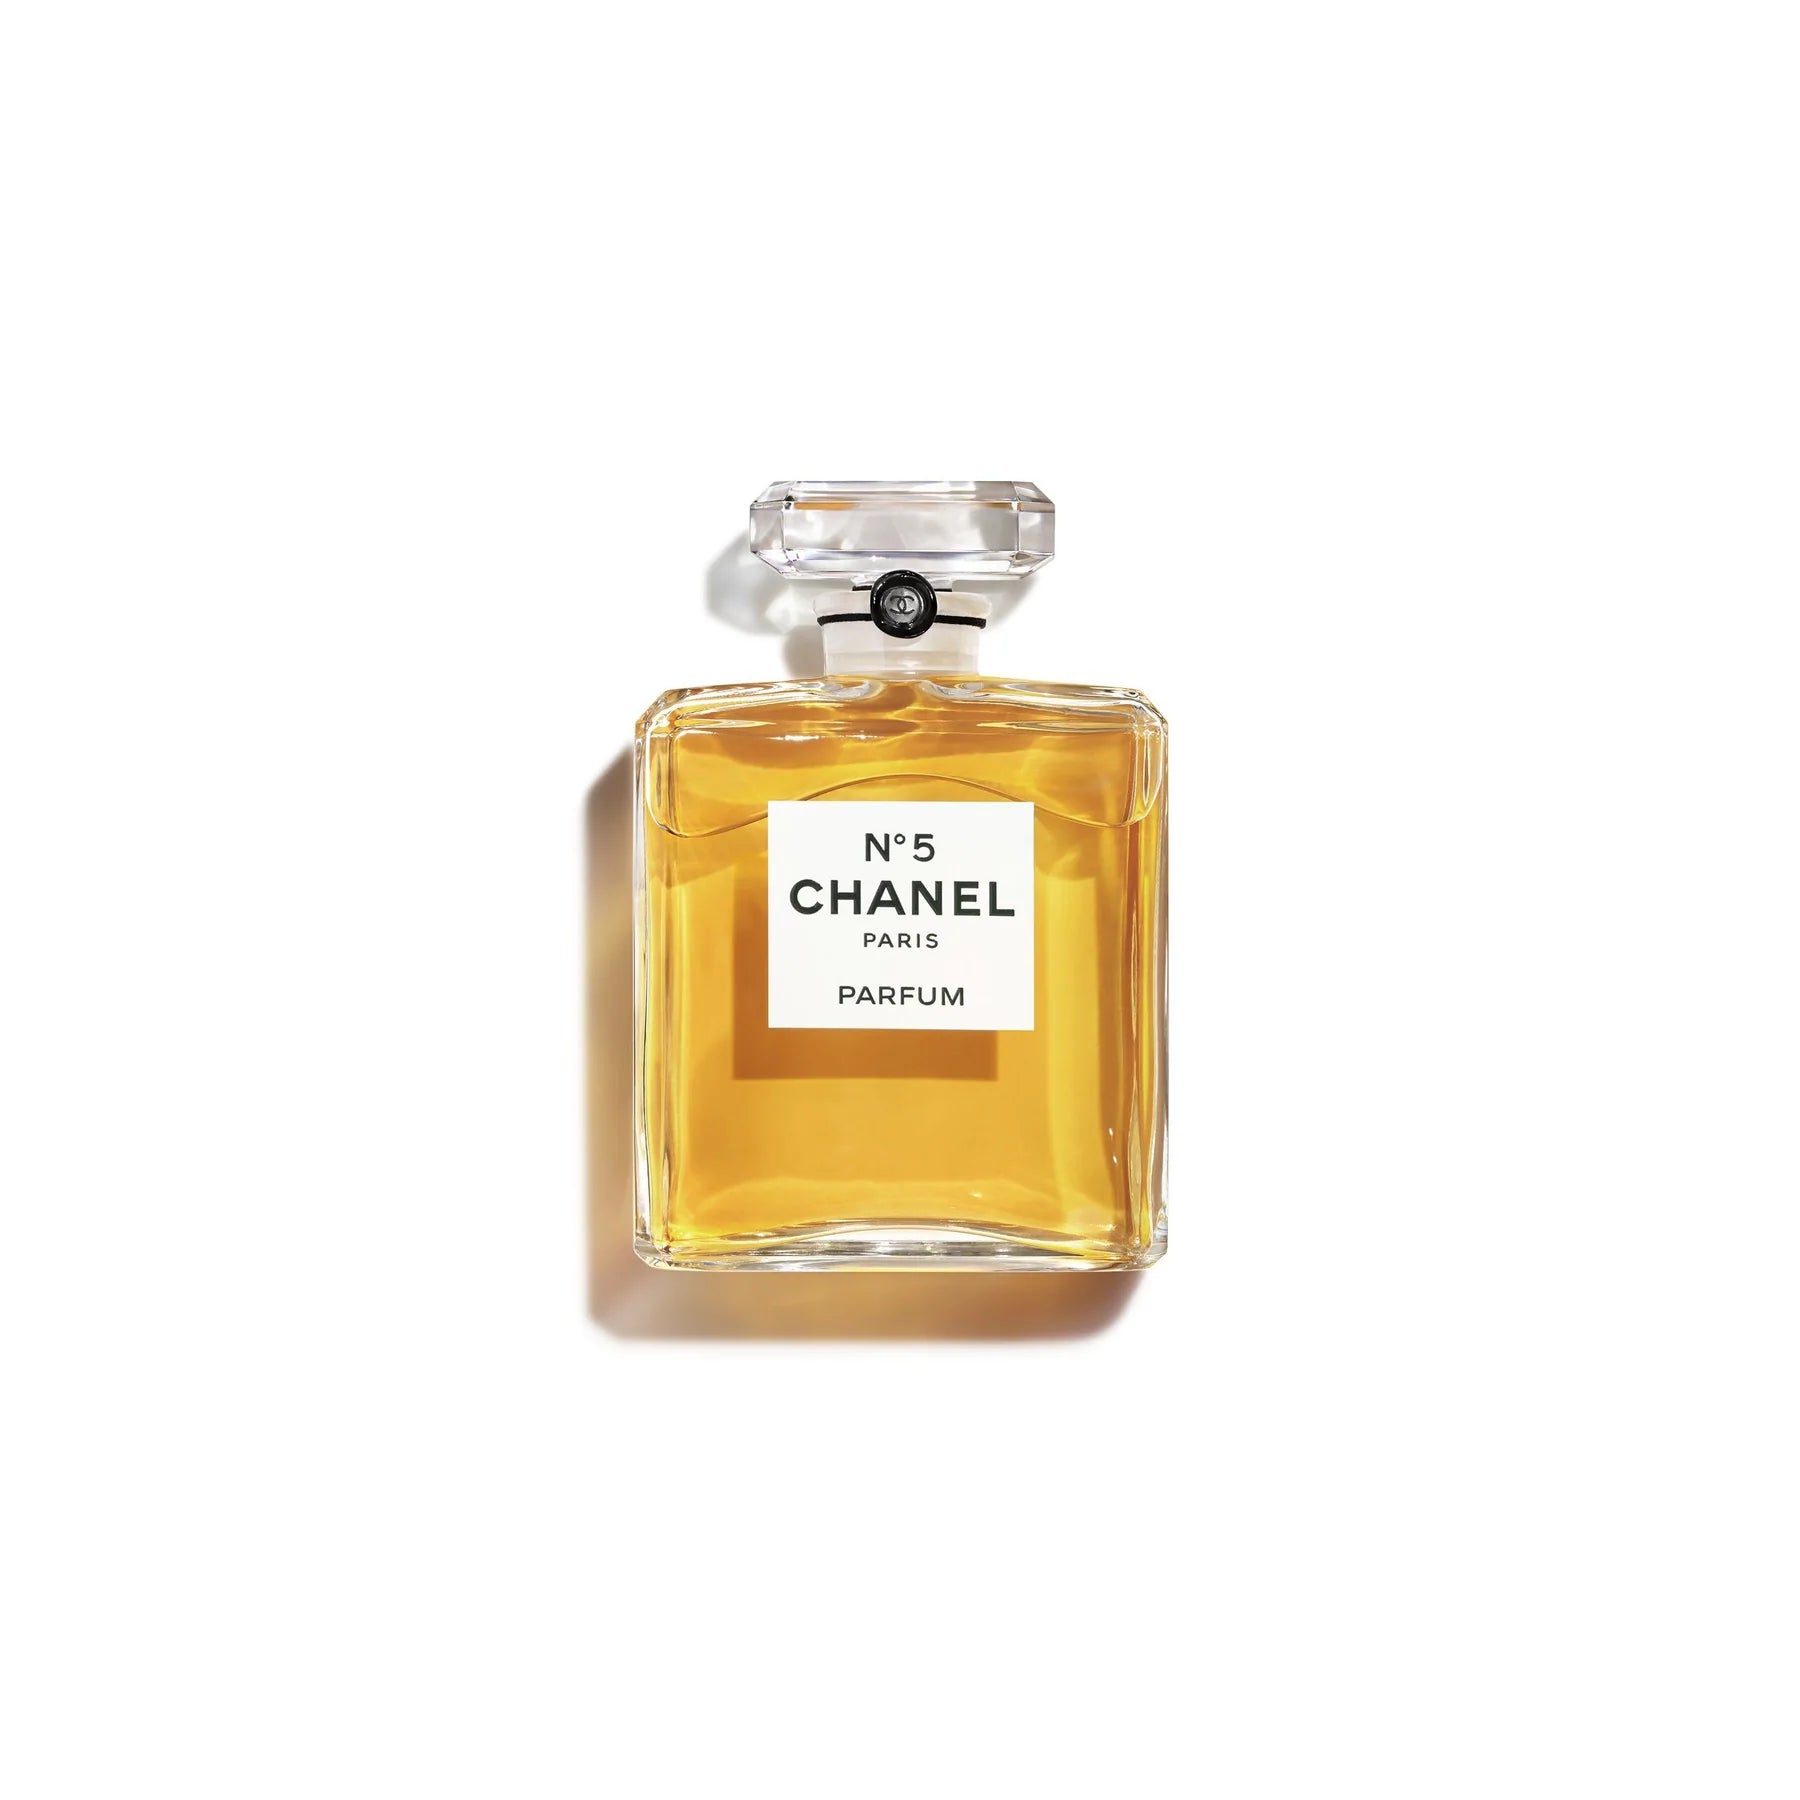 Chanel Gardénia Gardenia 15 Ml. or 0.25 Oz. Flacon Parfum -  Singapore